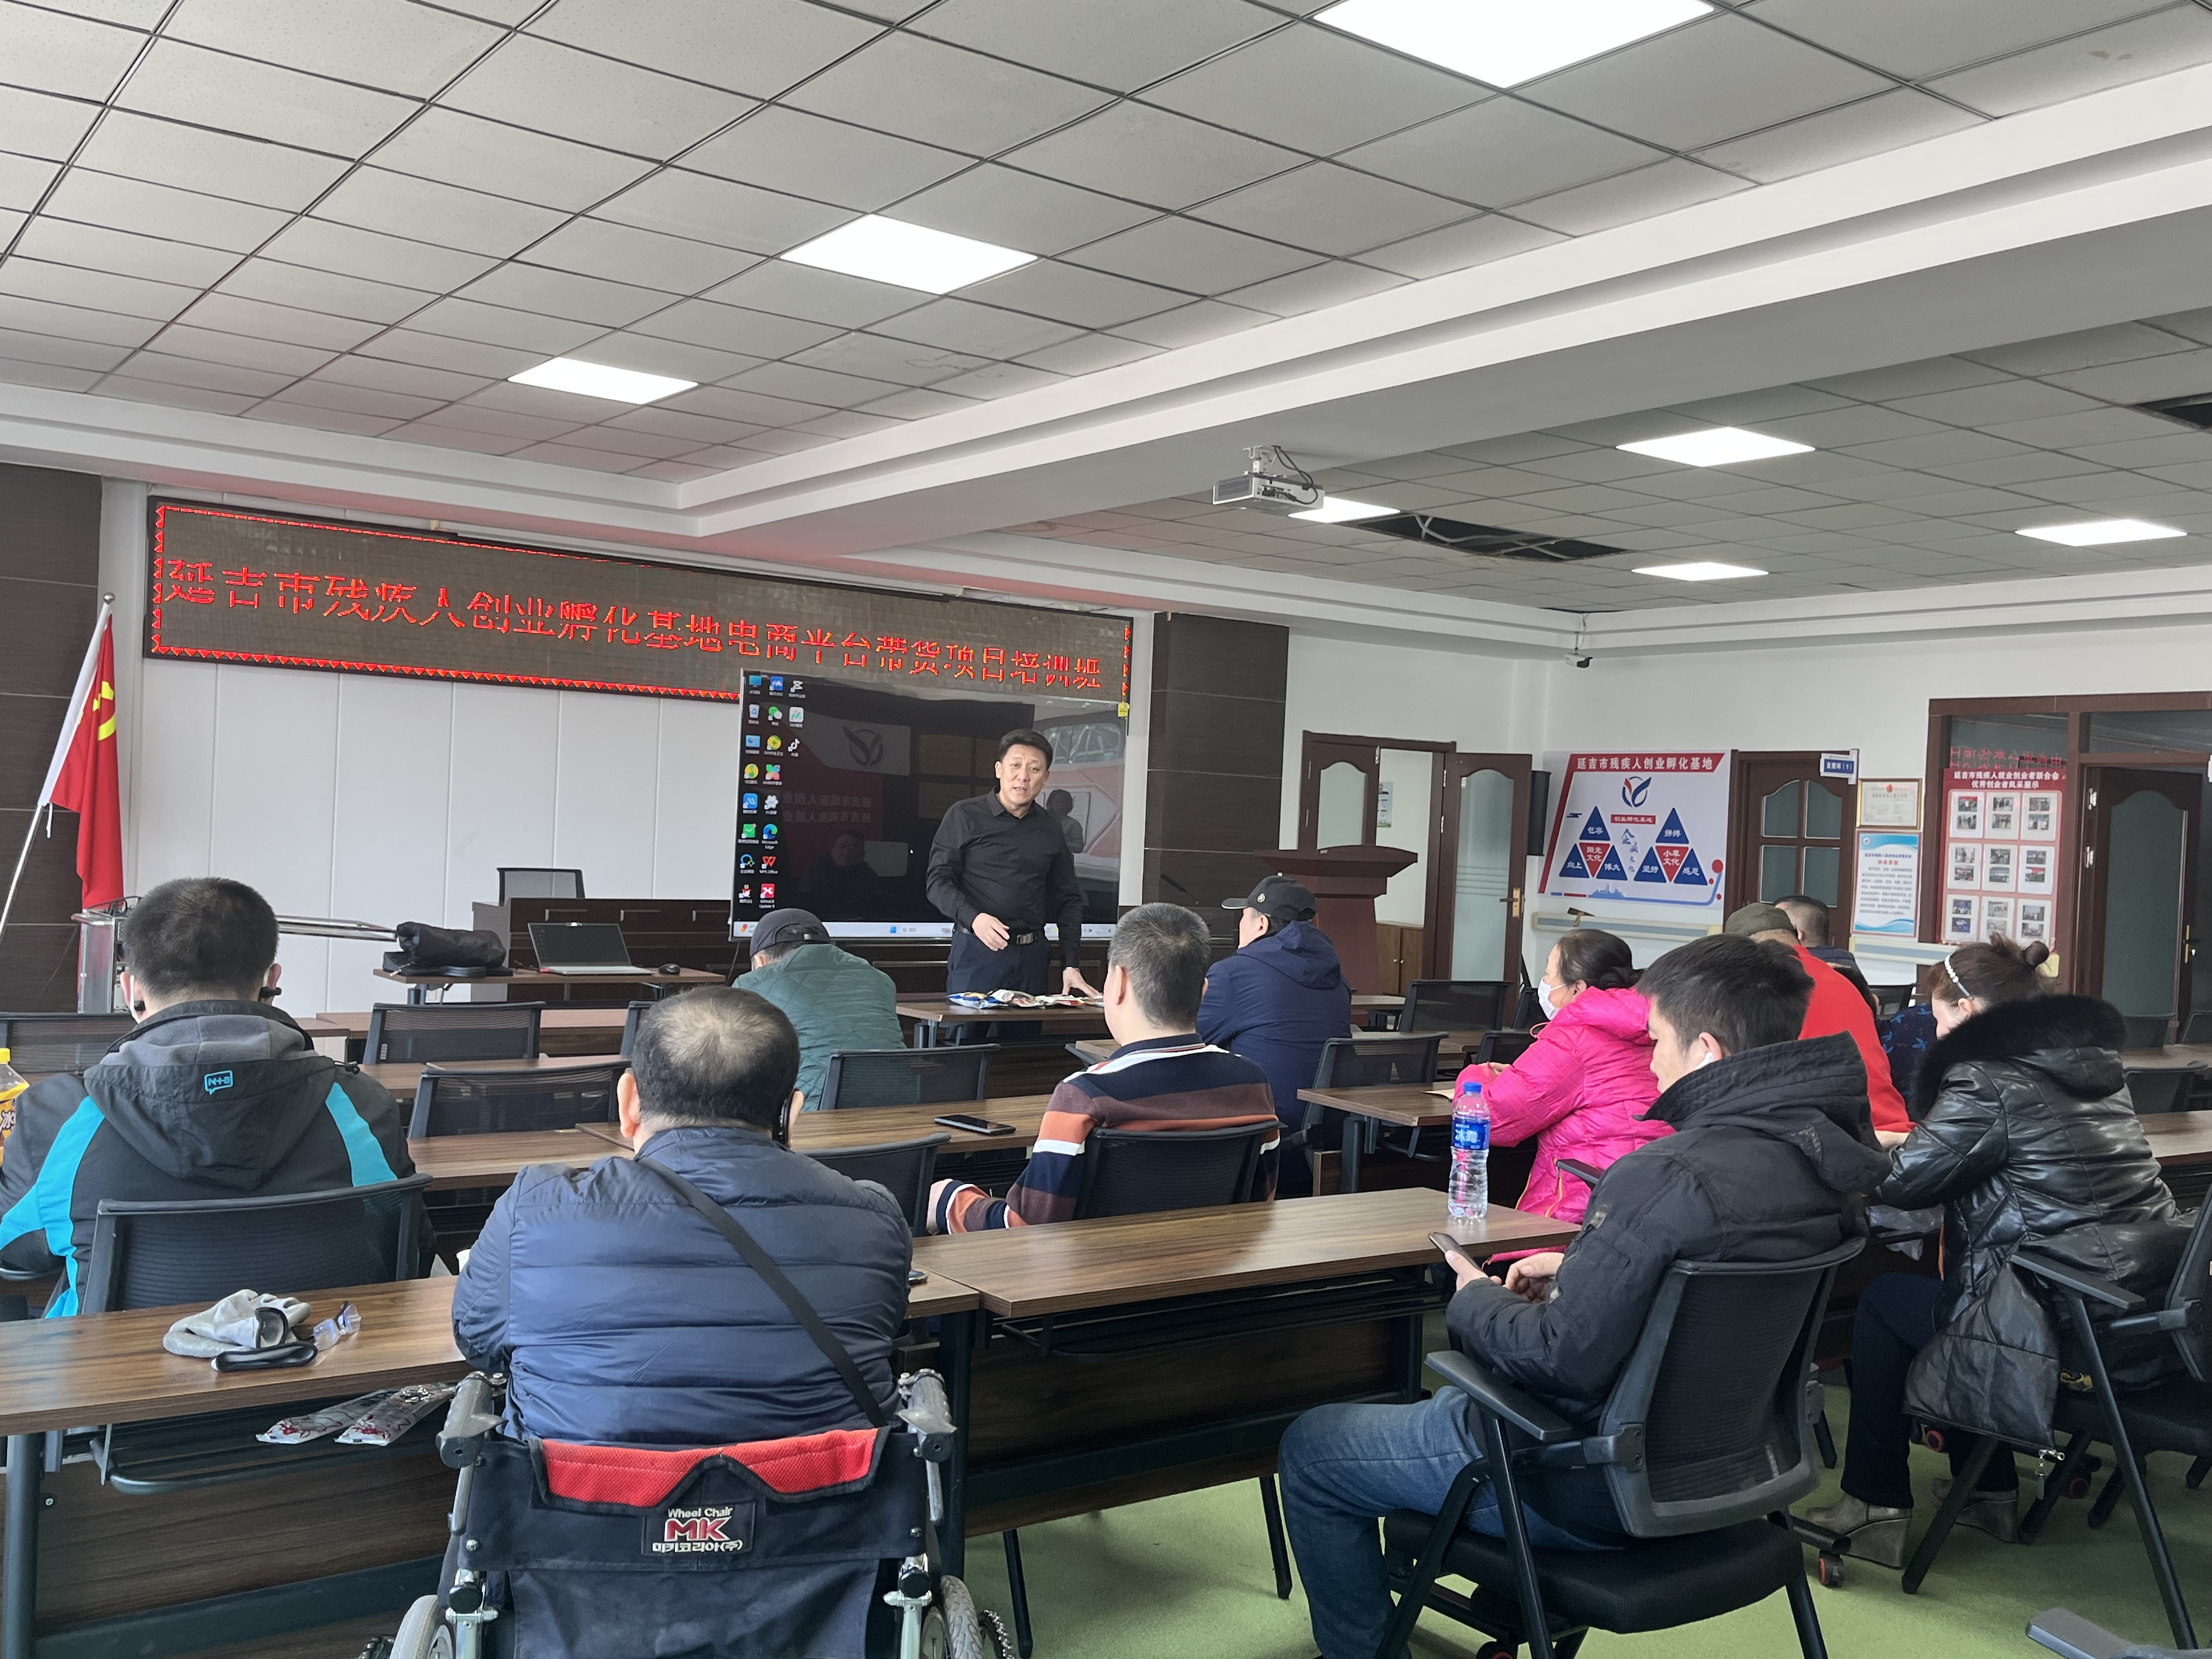 延吉市残疾人创业孵化基地电商平台带货培训“落地 ”